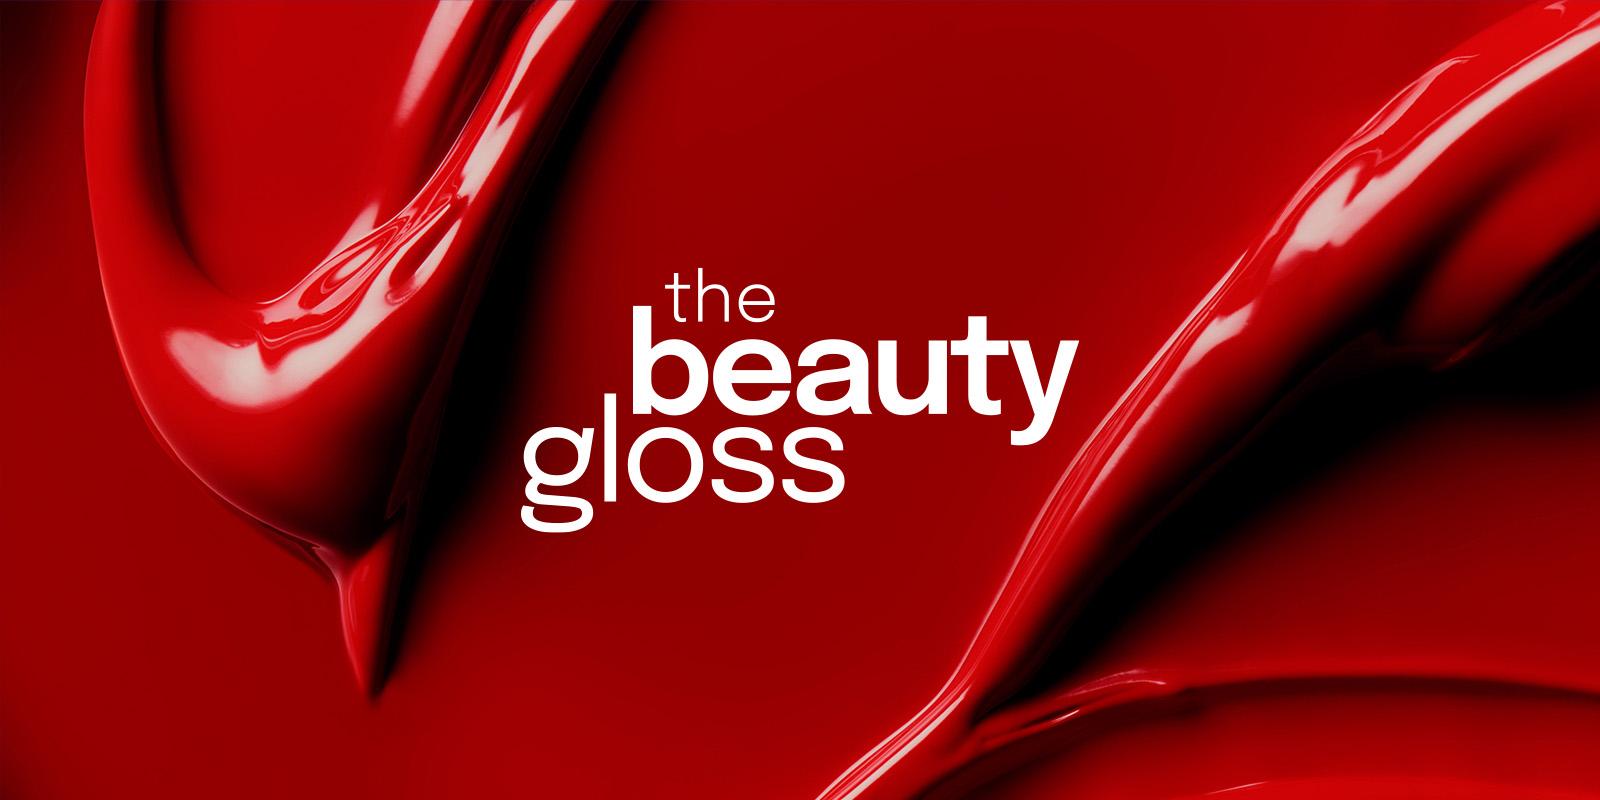 the beauty gloss